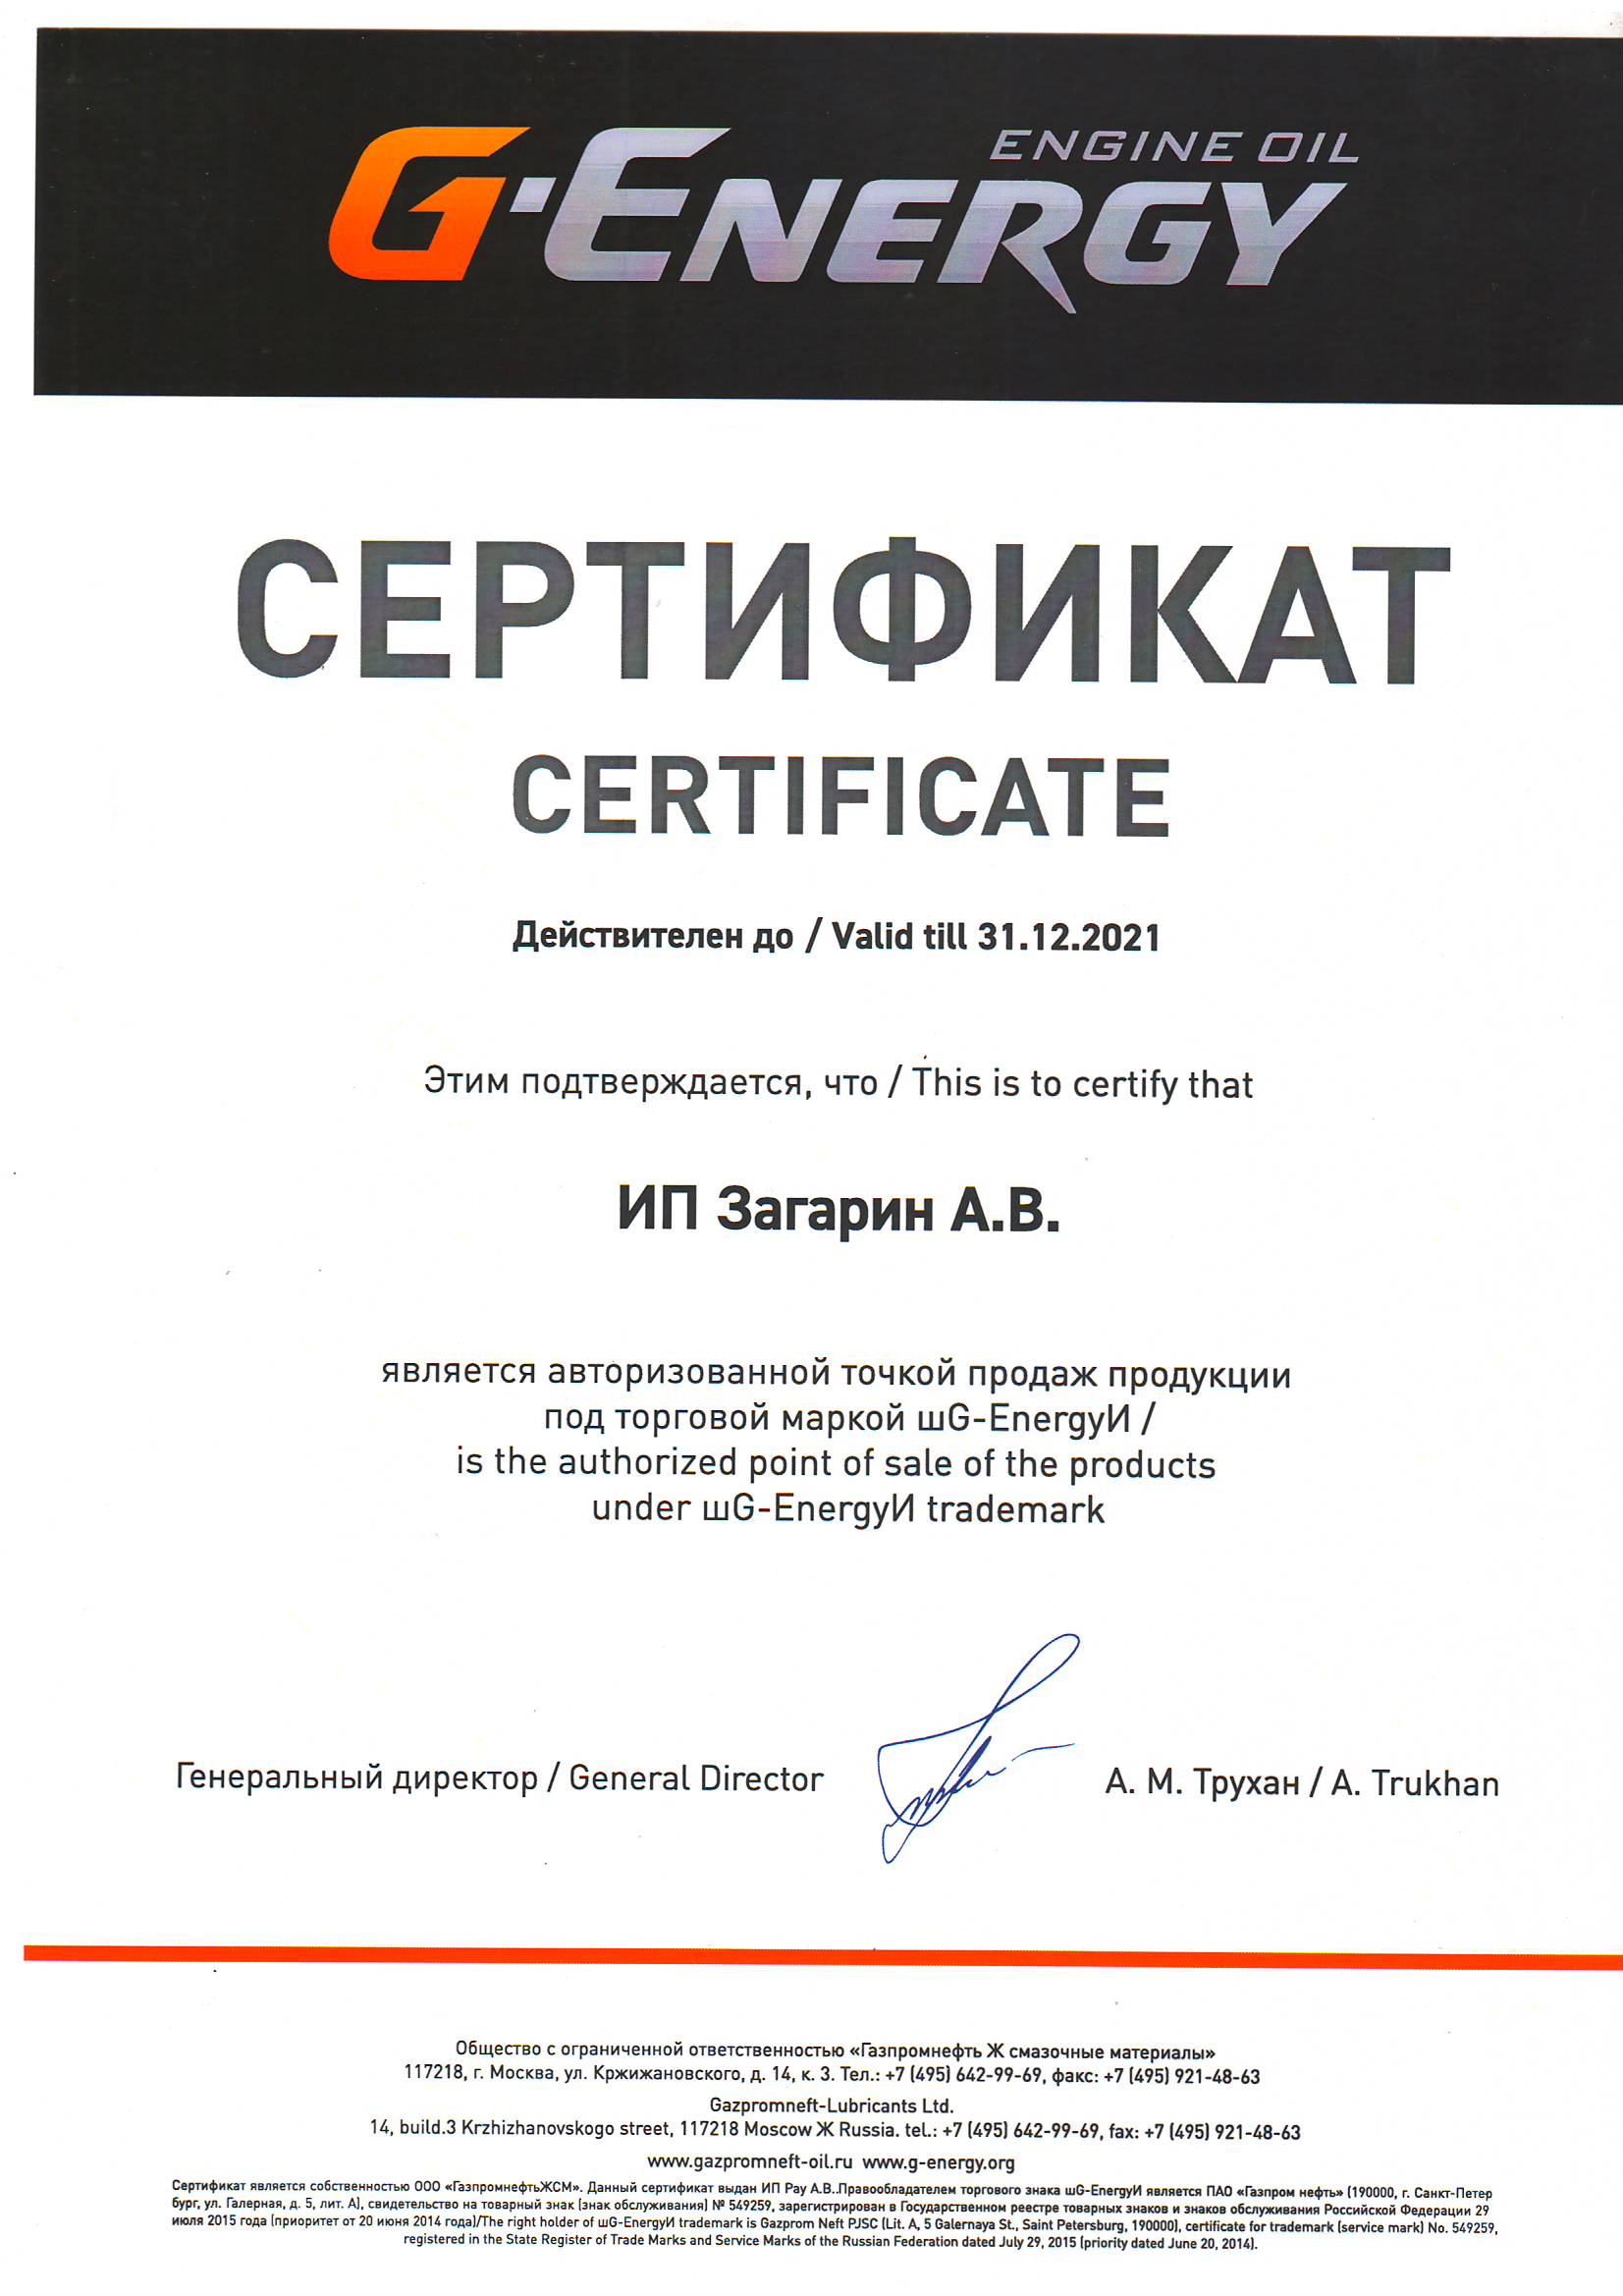 Сертификат G-Energy